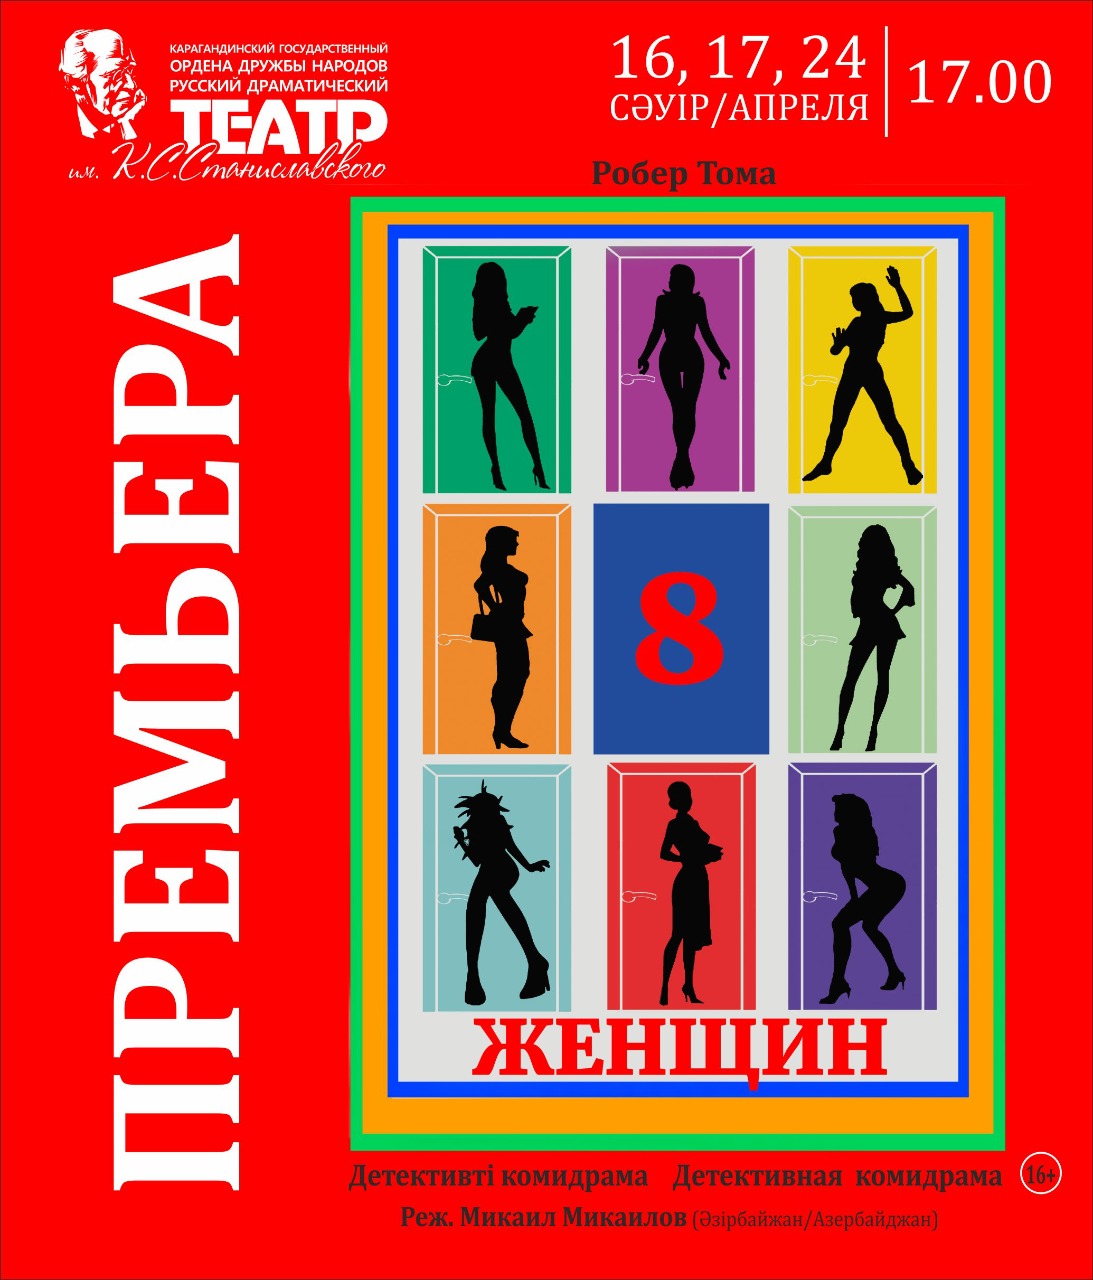 Театр Станиславского приглашает карагандинцев на премьеру детективной комедрамы